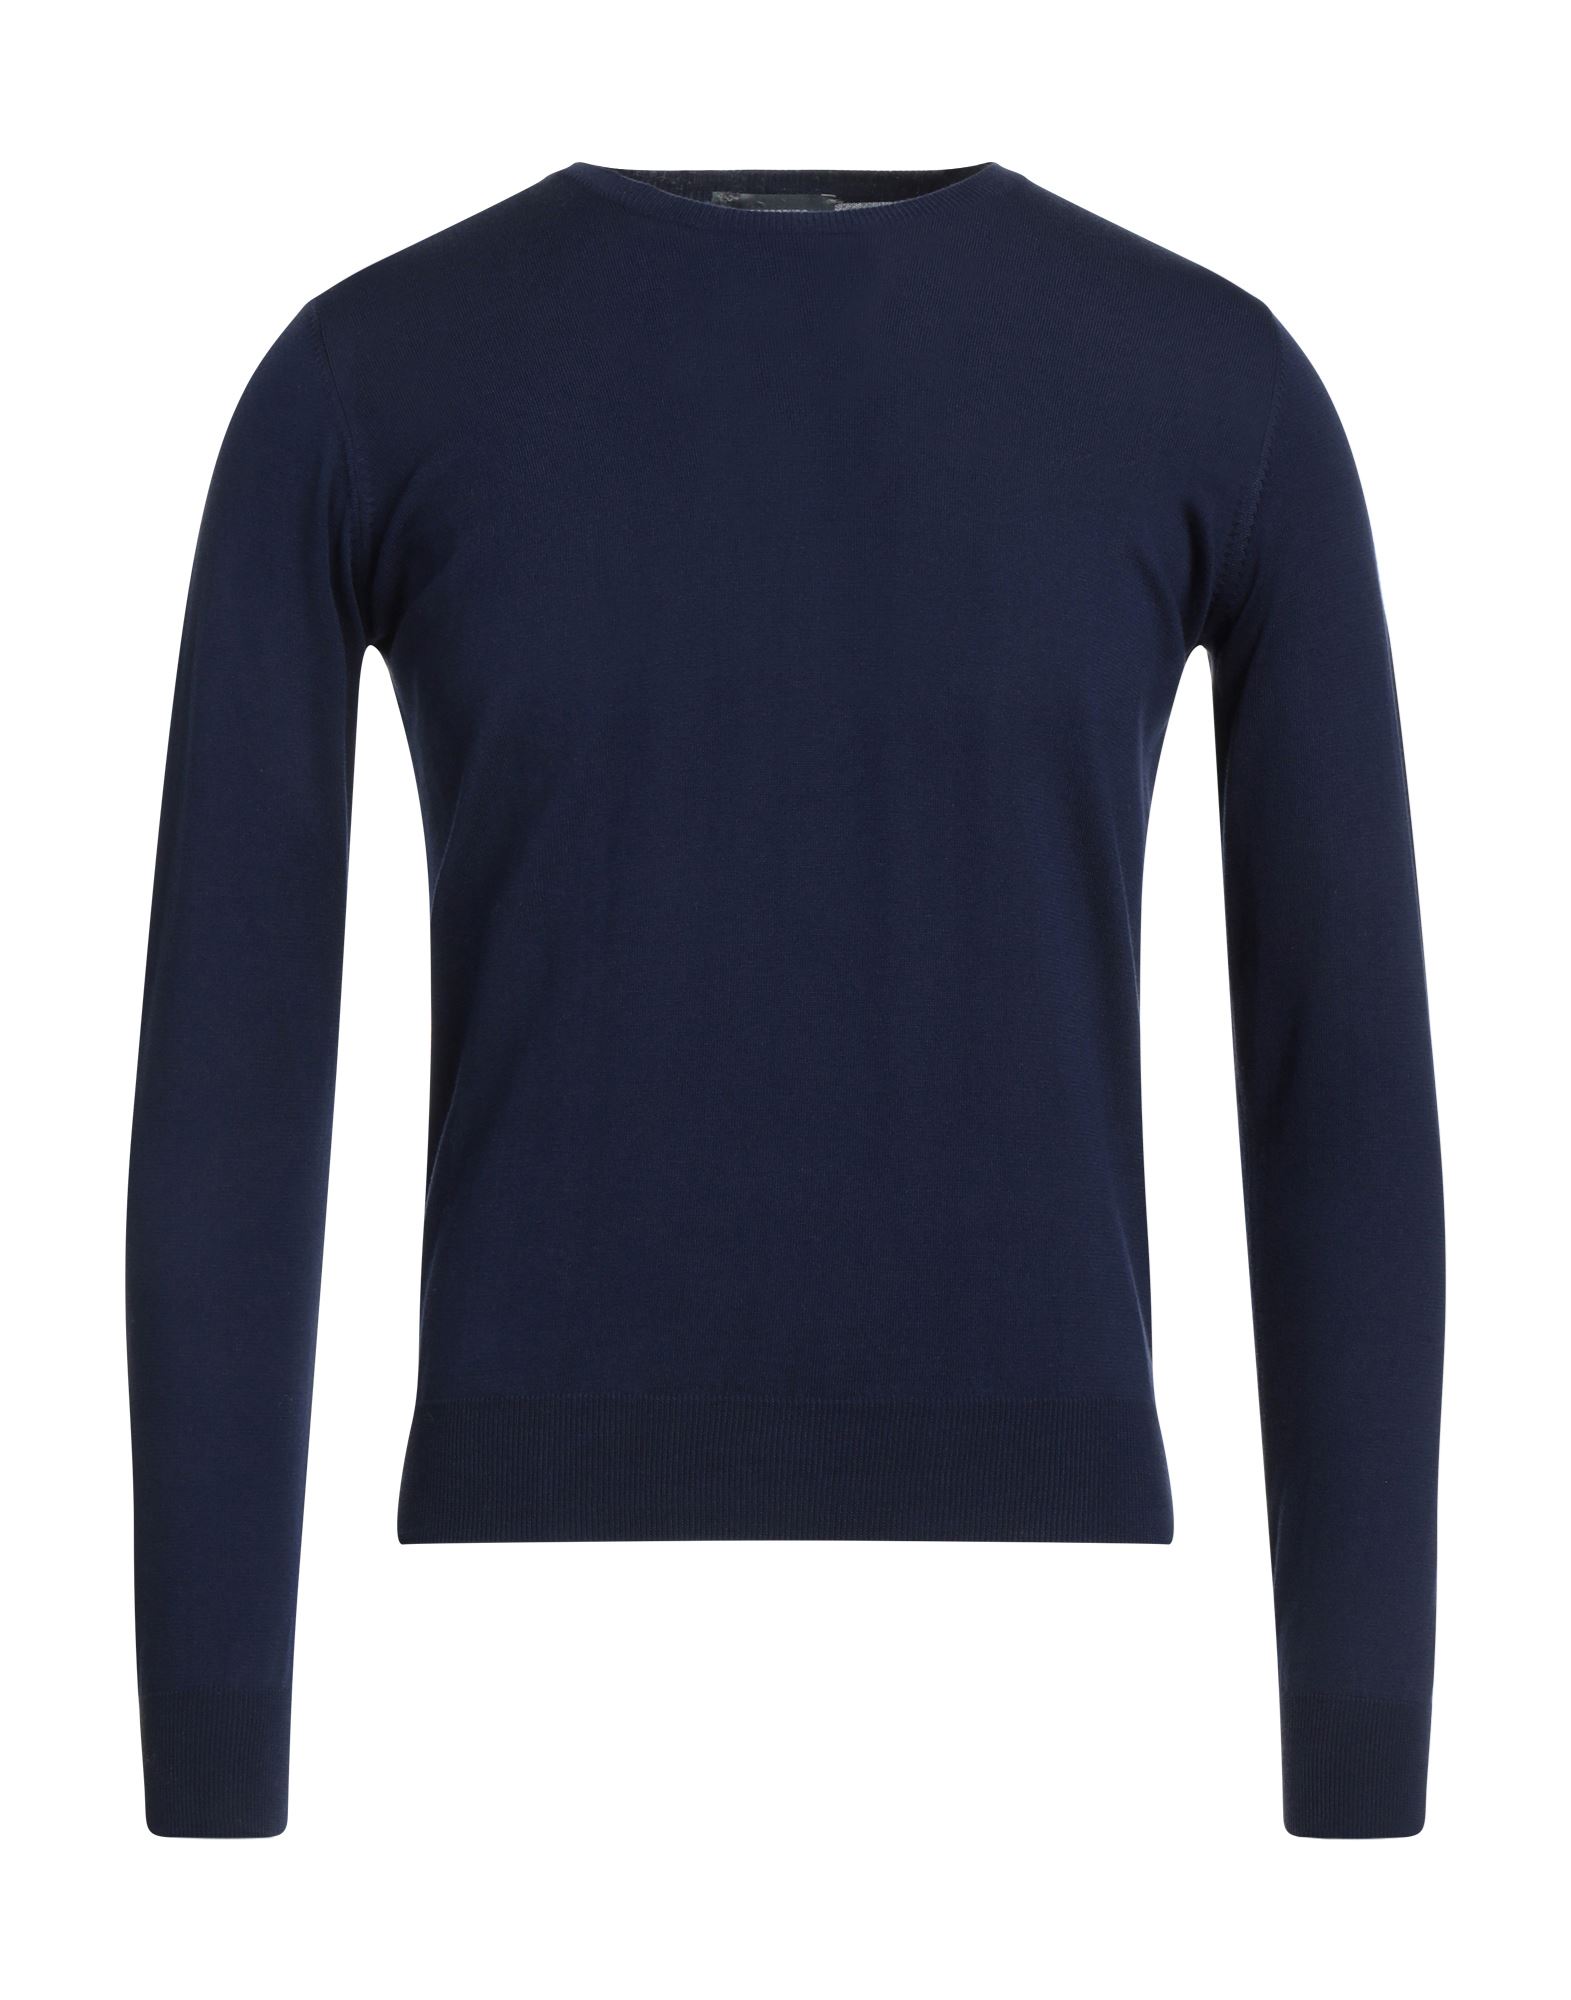 Rossopuro Man Sweater Navy Blue Size 8 Cotton